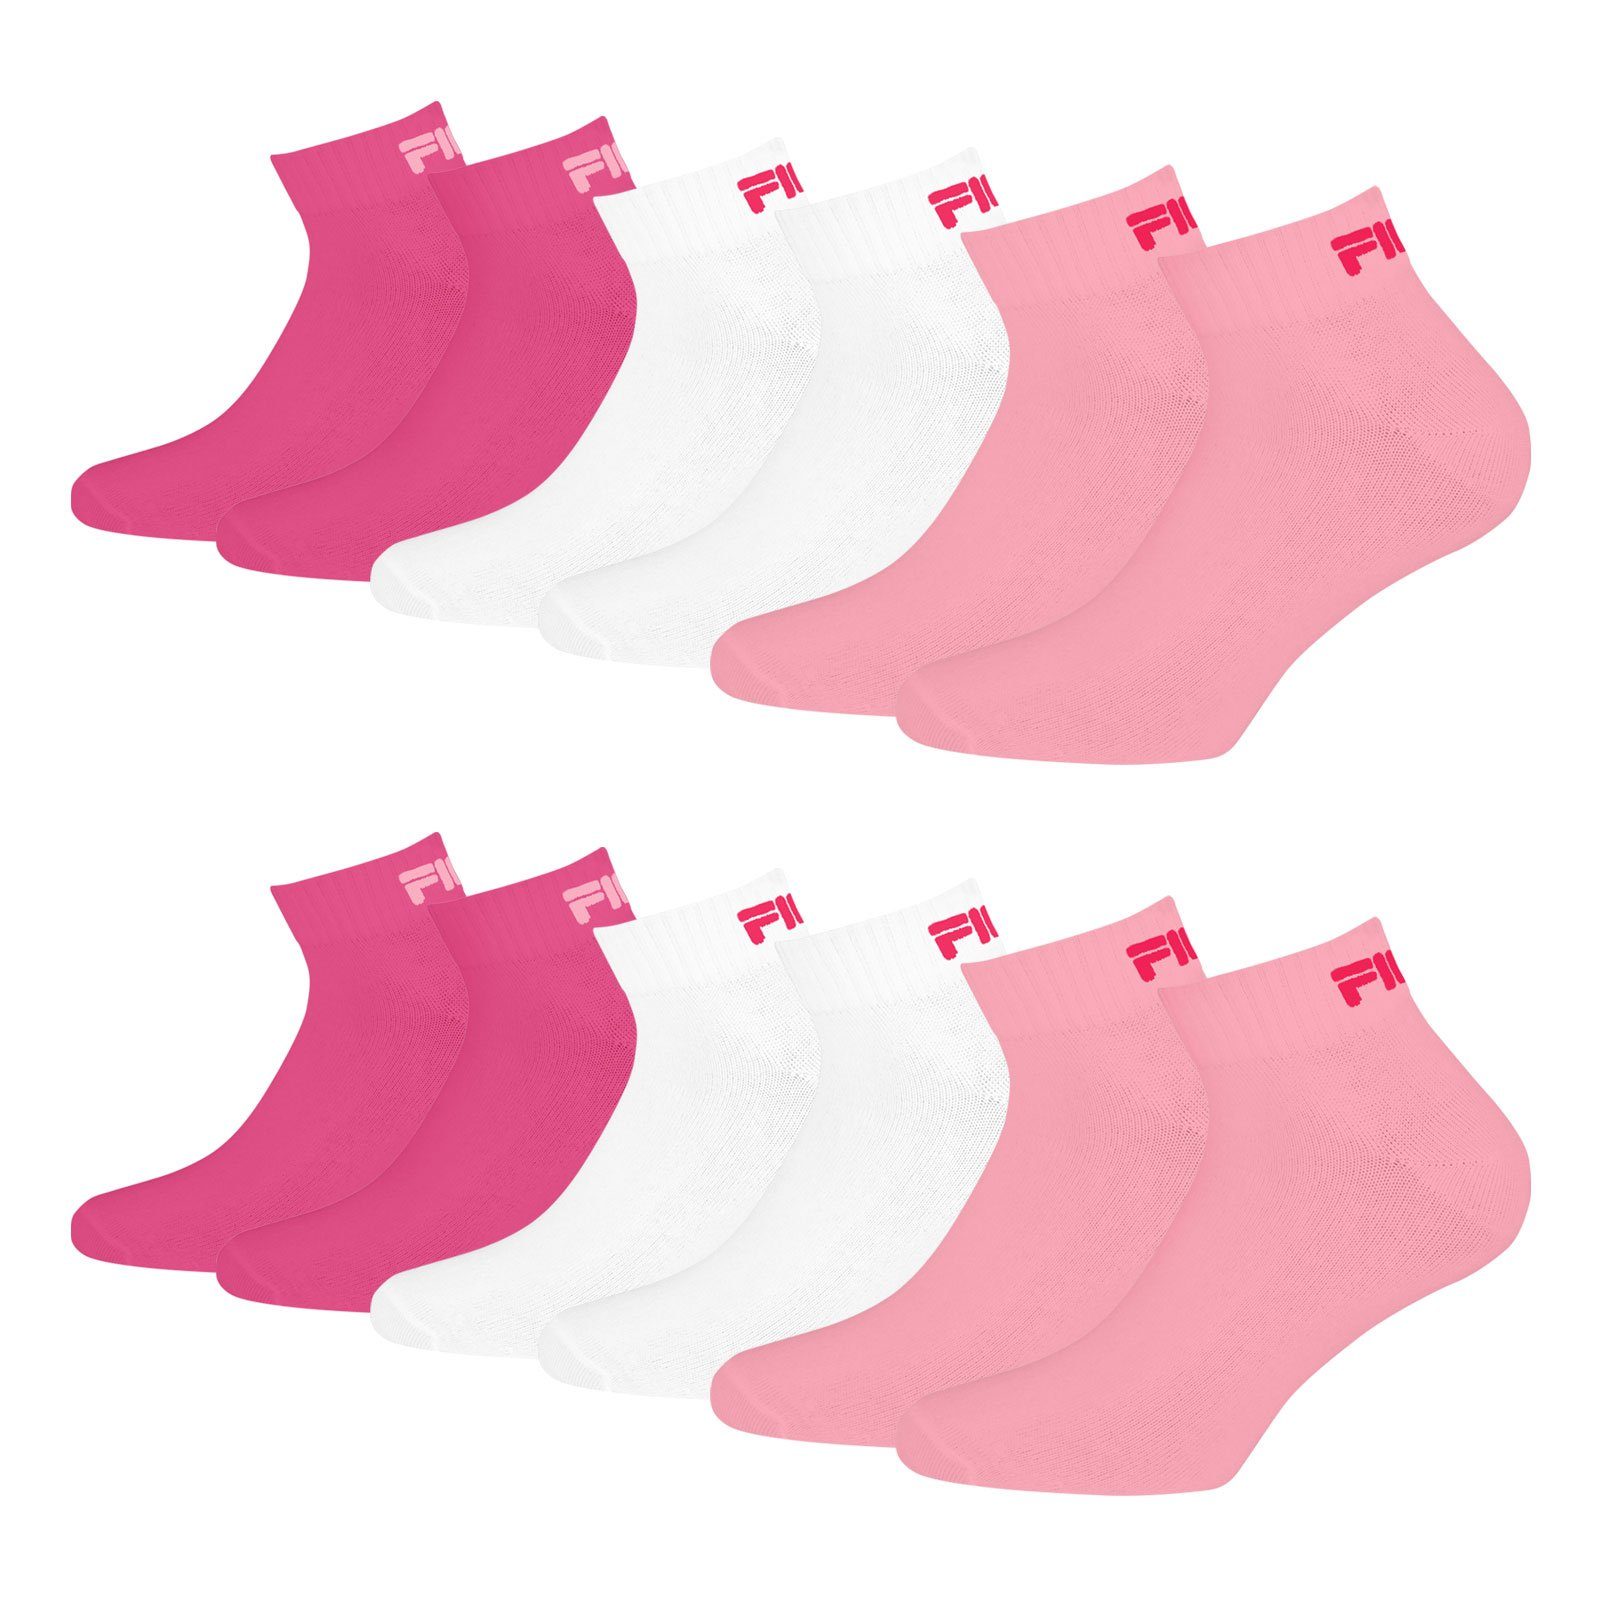 Fila Sportsocken Quarter Socken (6-Paar) mit weichem Rippbündchen 806 pink panter